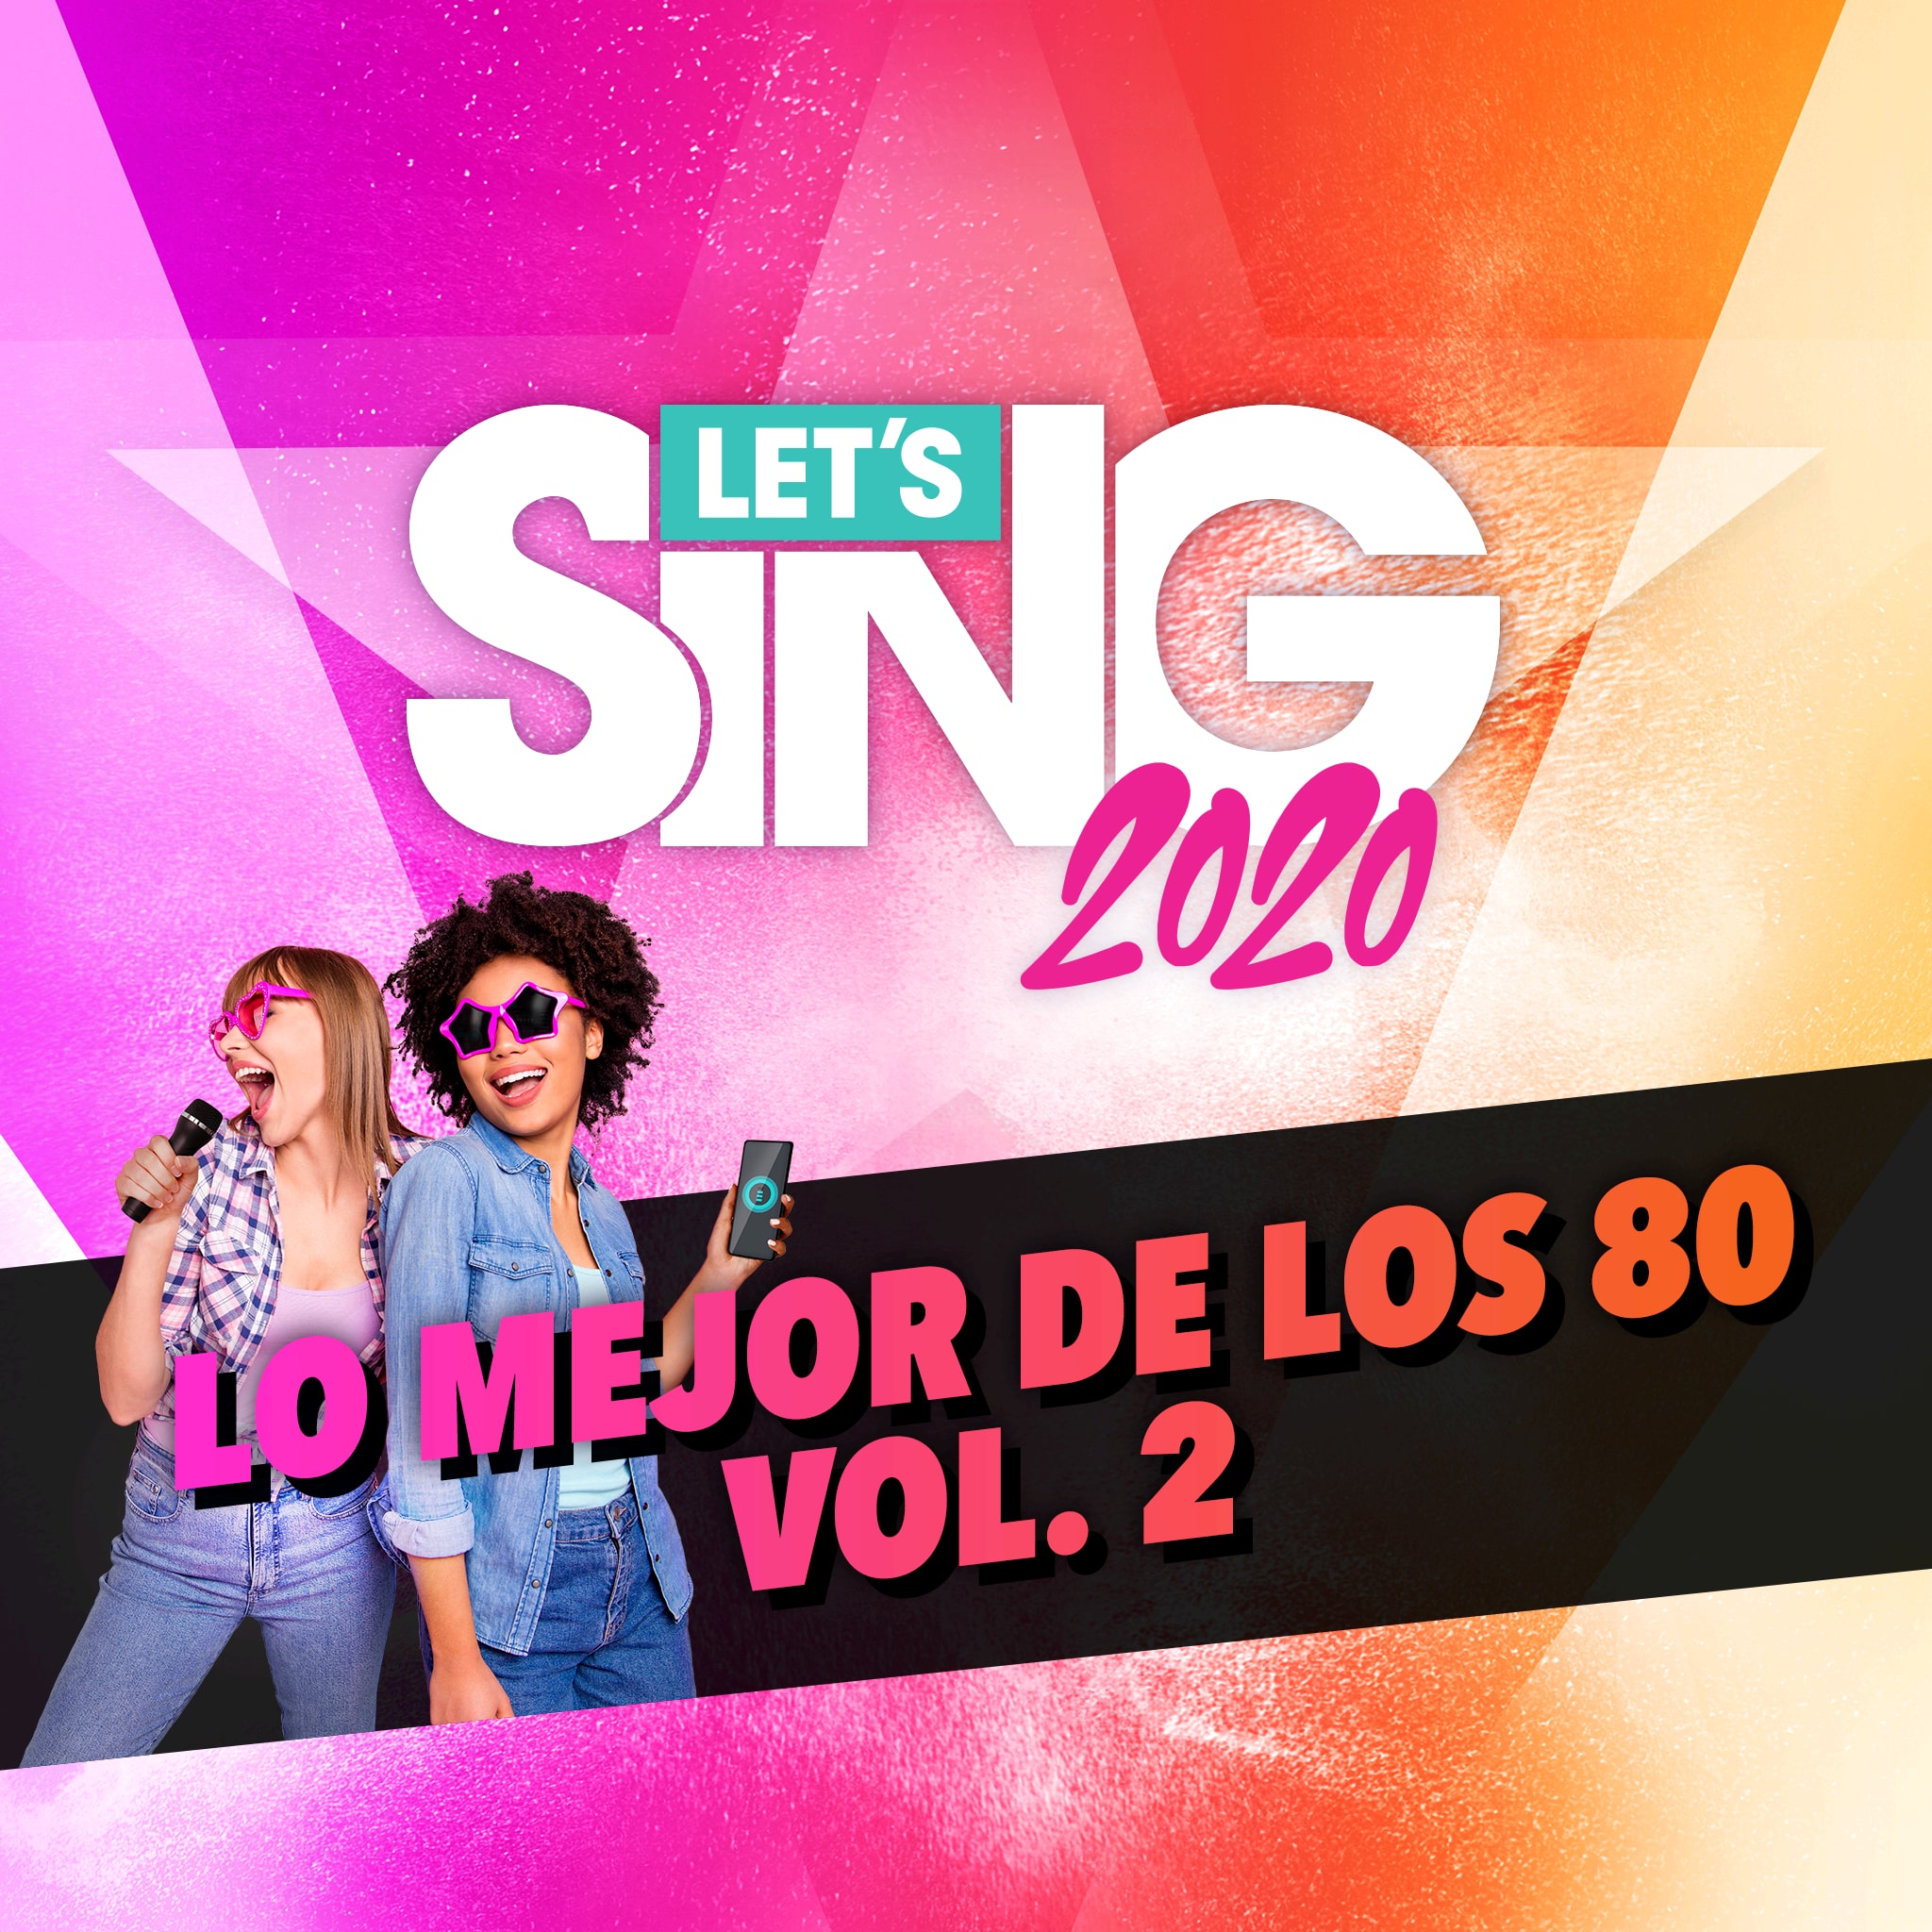 Let's Sing 12 -  Lo mejor de los 80 Vol. 2